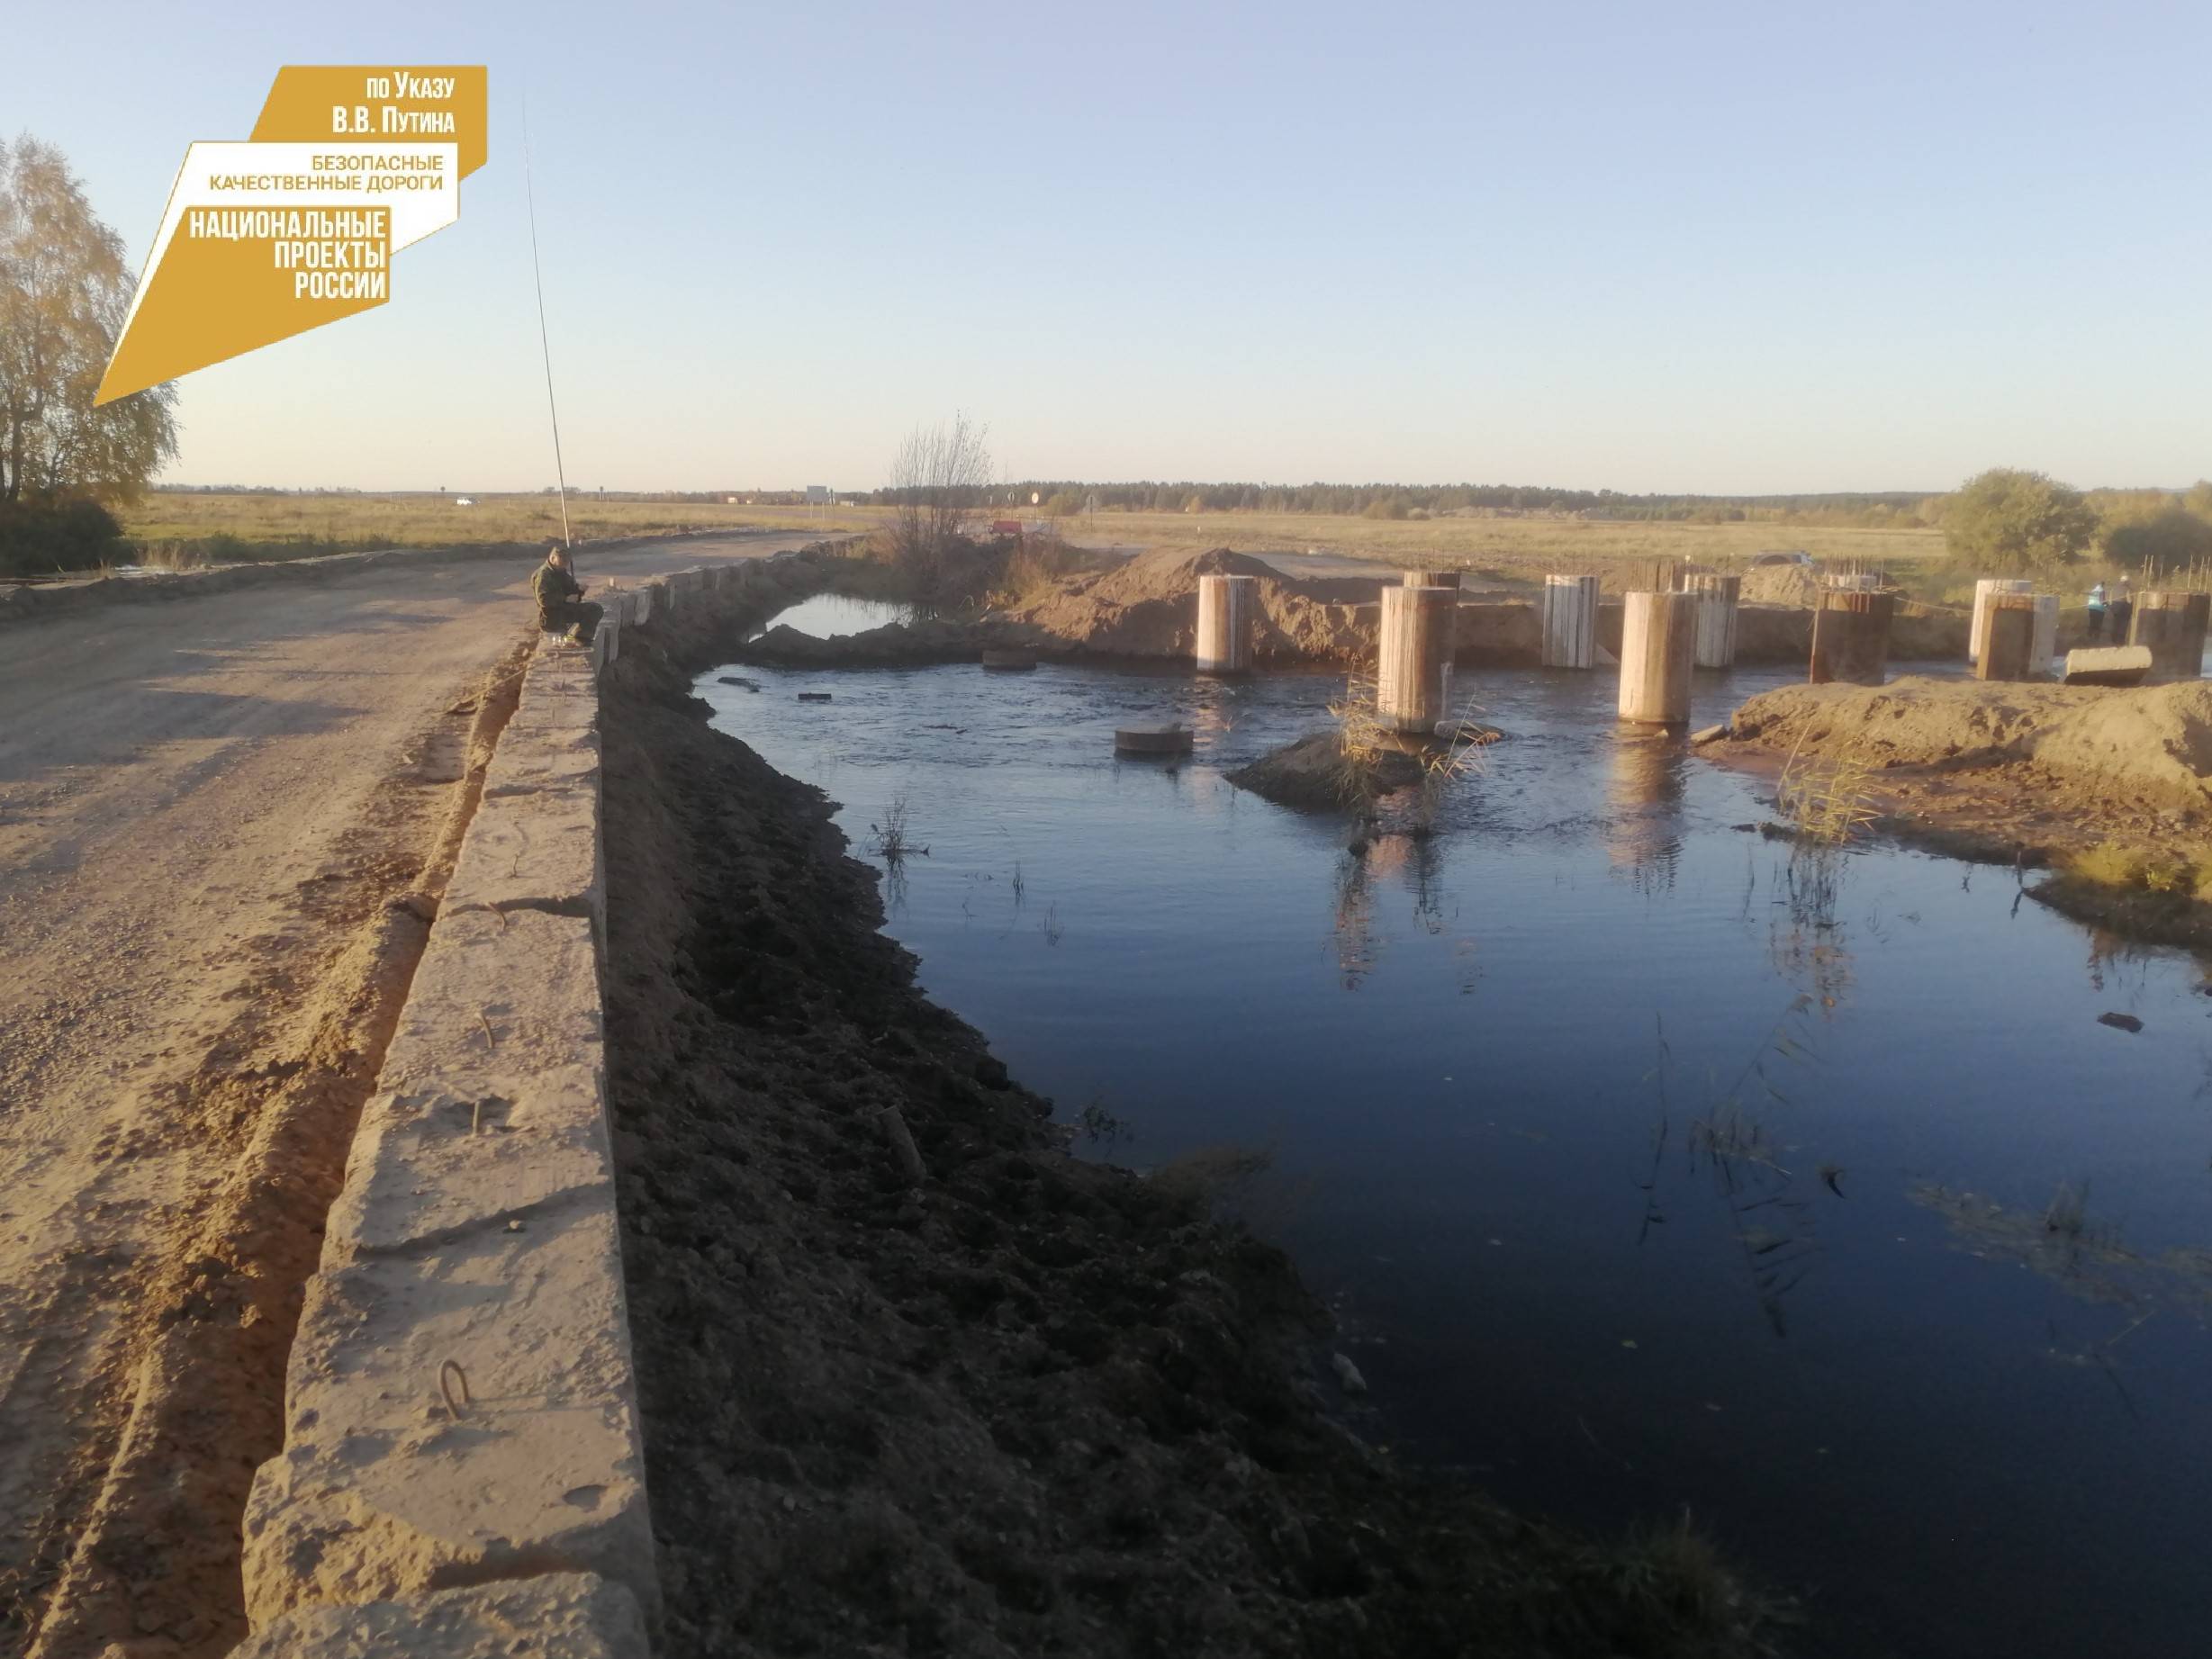 В Бурятии недалеко от села Шергино капитально ремонтируют мост